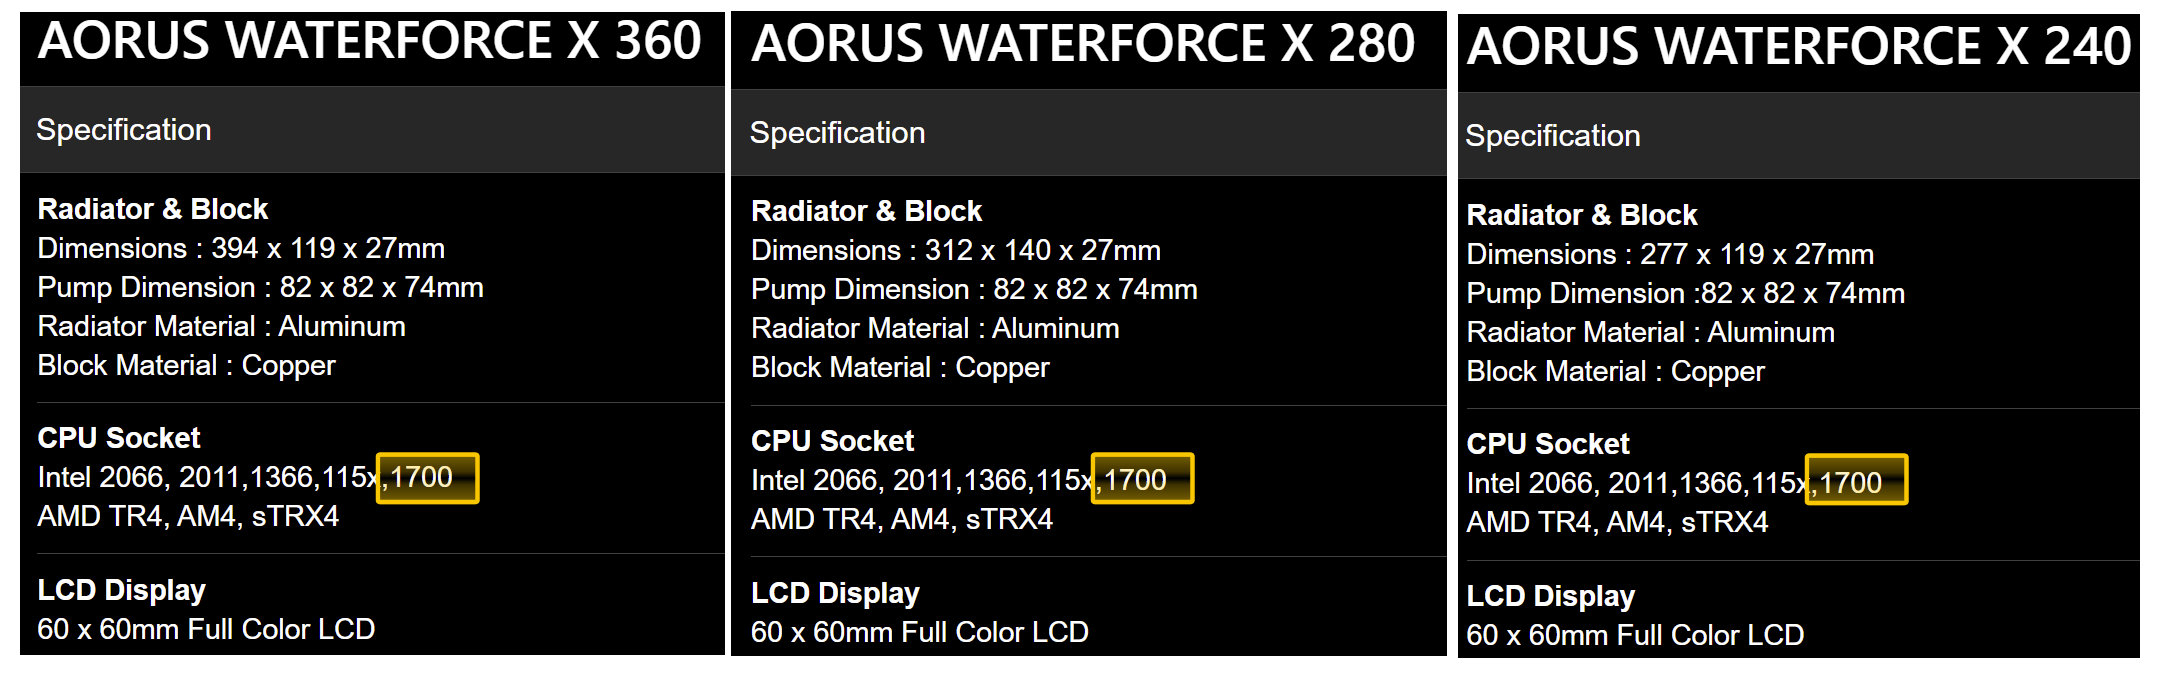 Gigabyte уже наделила серию СЖО Aorus WaterForce X поддержкой будущих процессоров Intel Alder Lake в корпусе LGA 1700